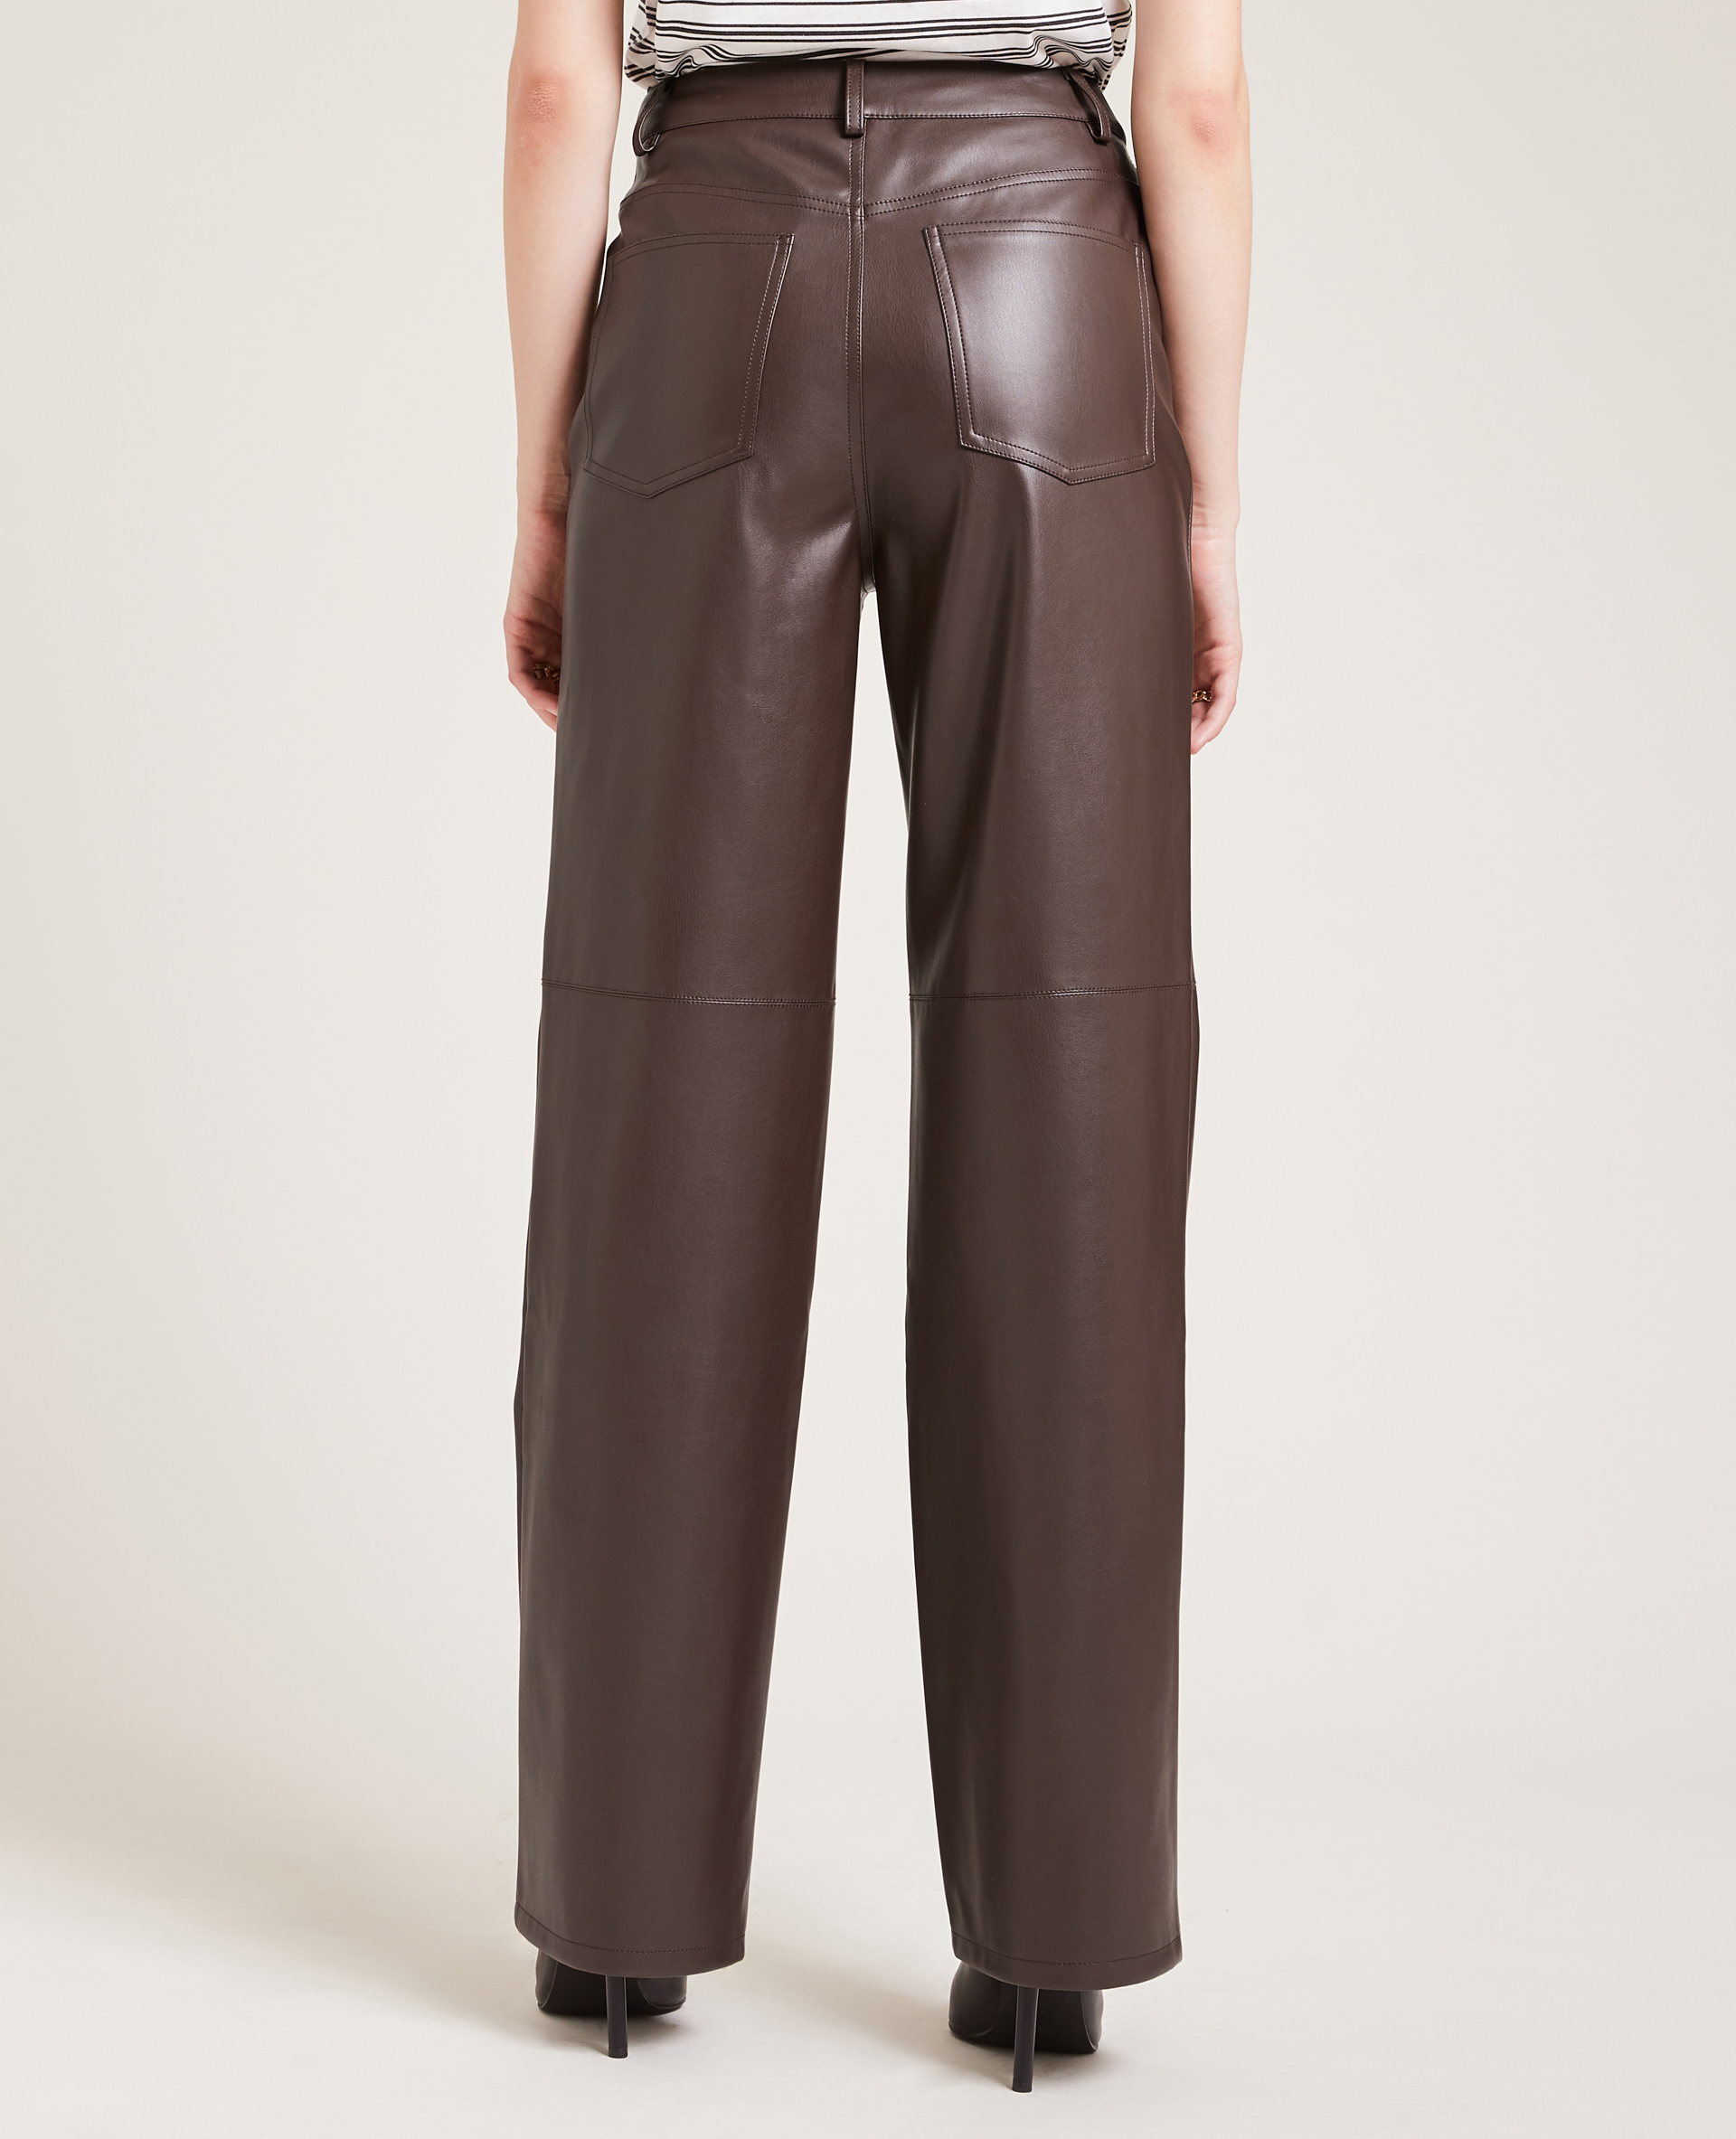 Pantalon droit en simili cuir marron - Pimkie